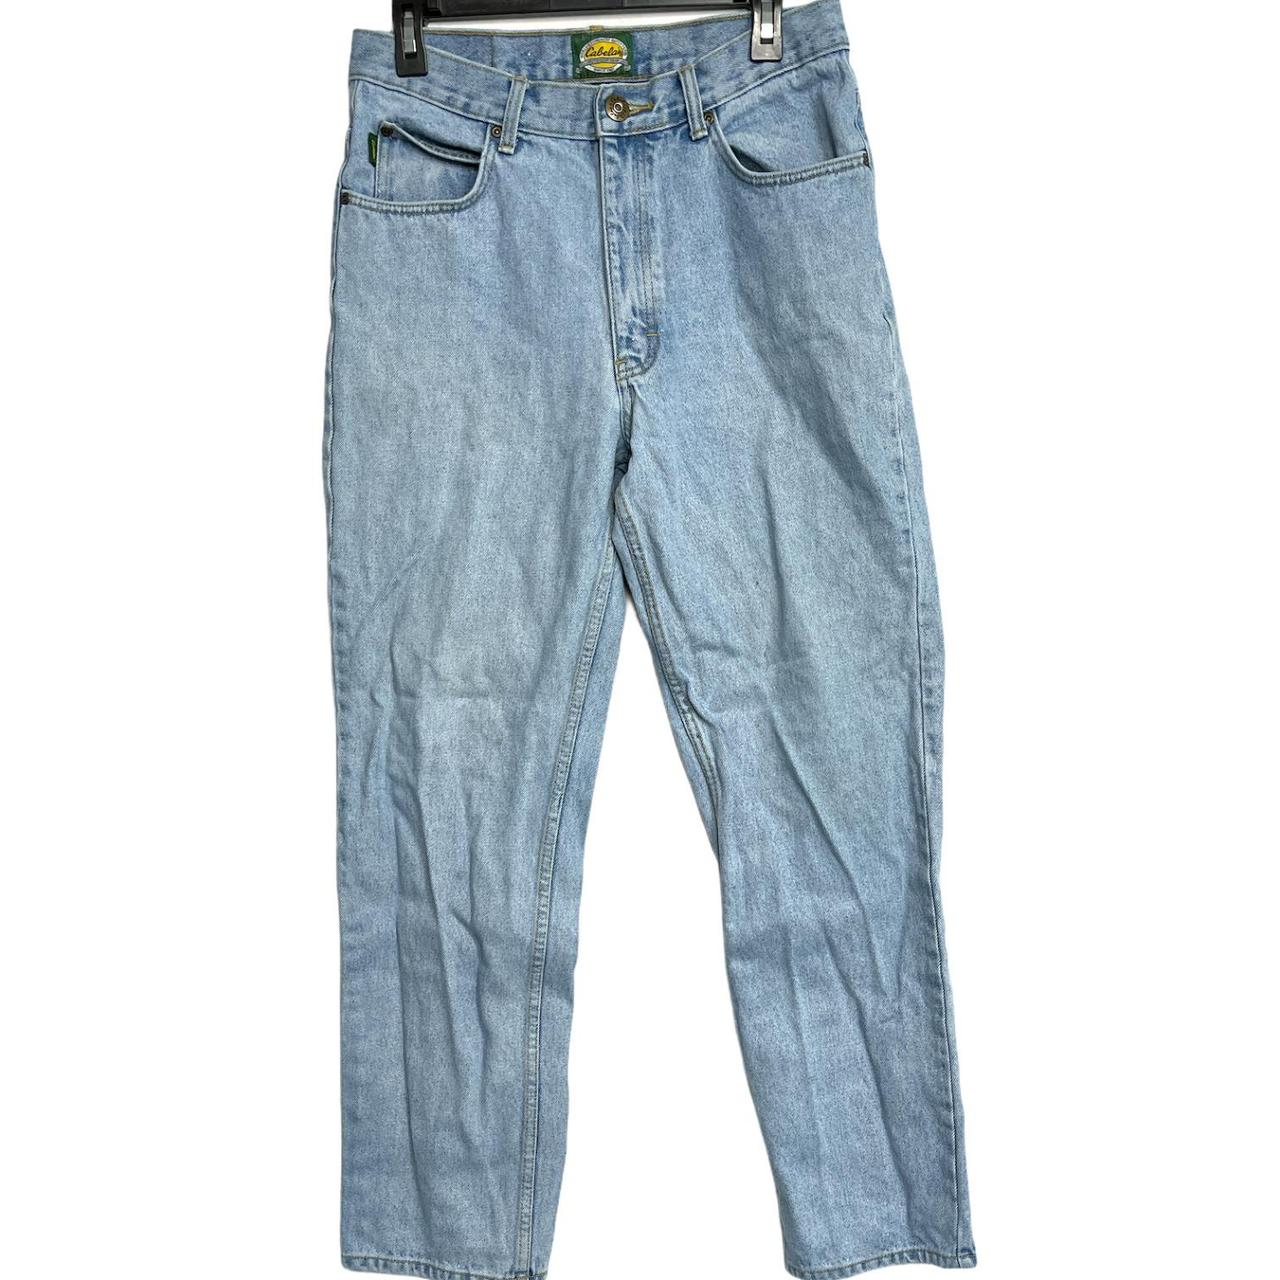 Product Image 1 - Cabela's Jeans Men Size 32